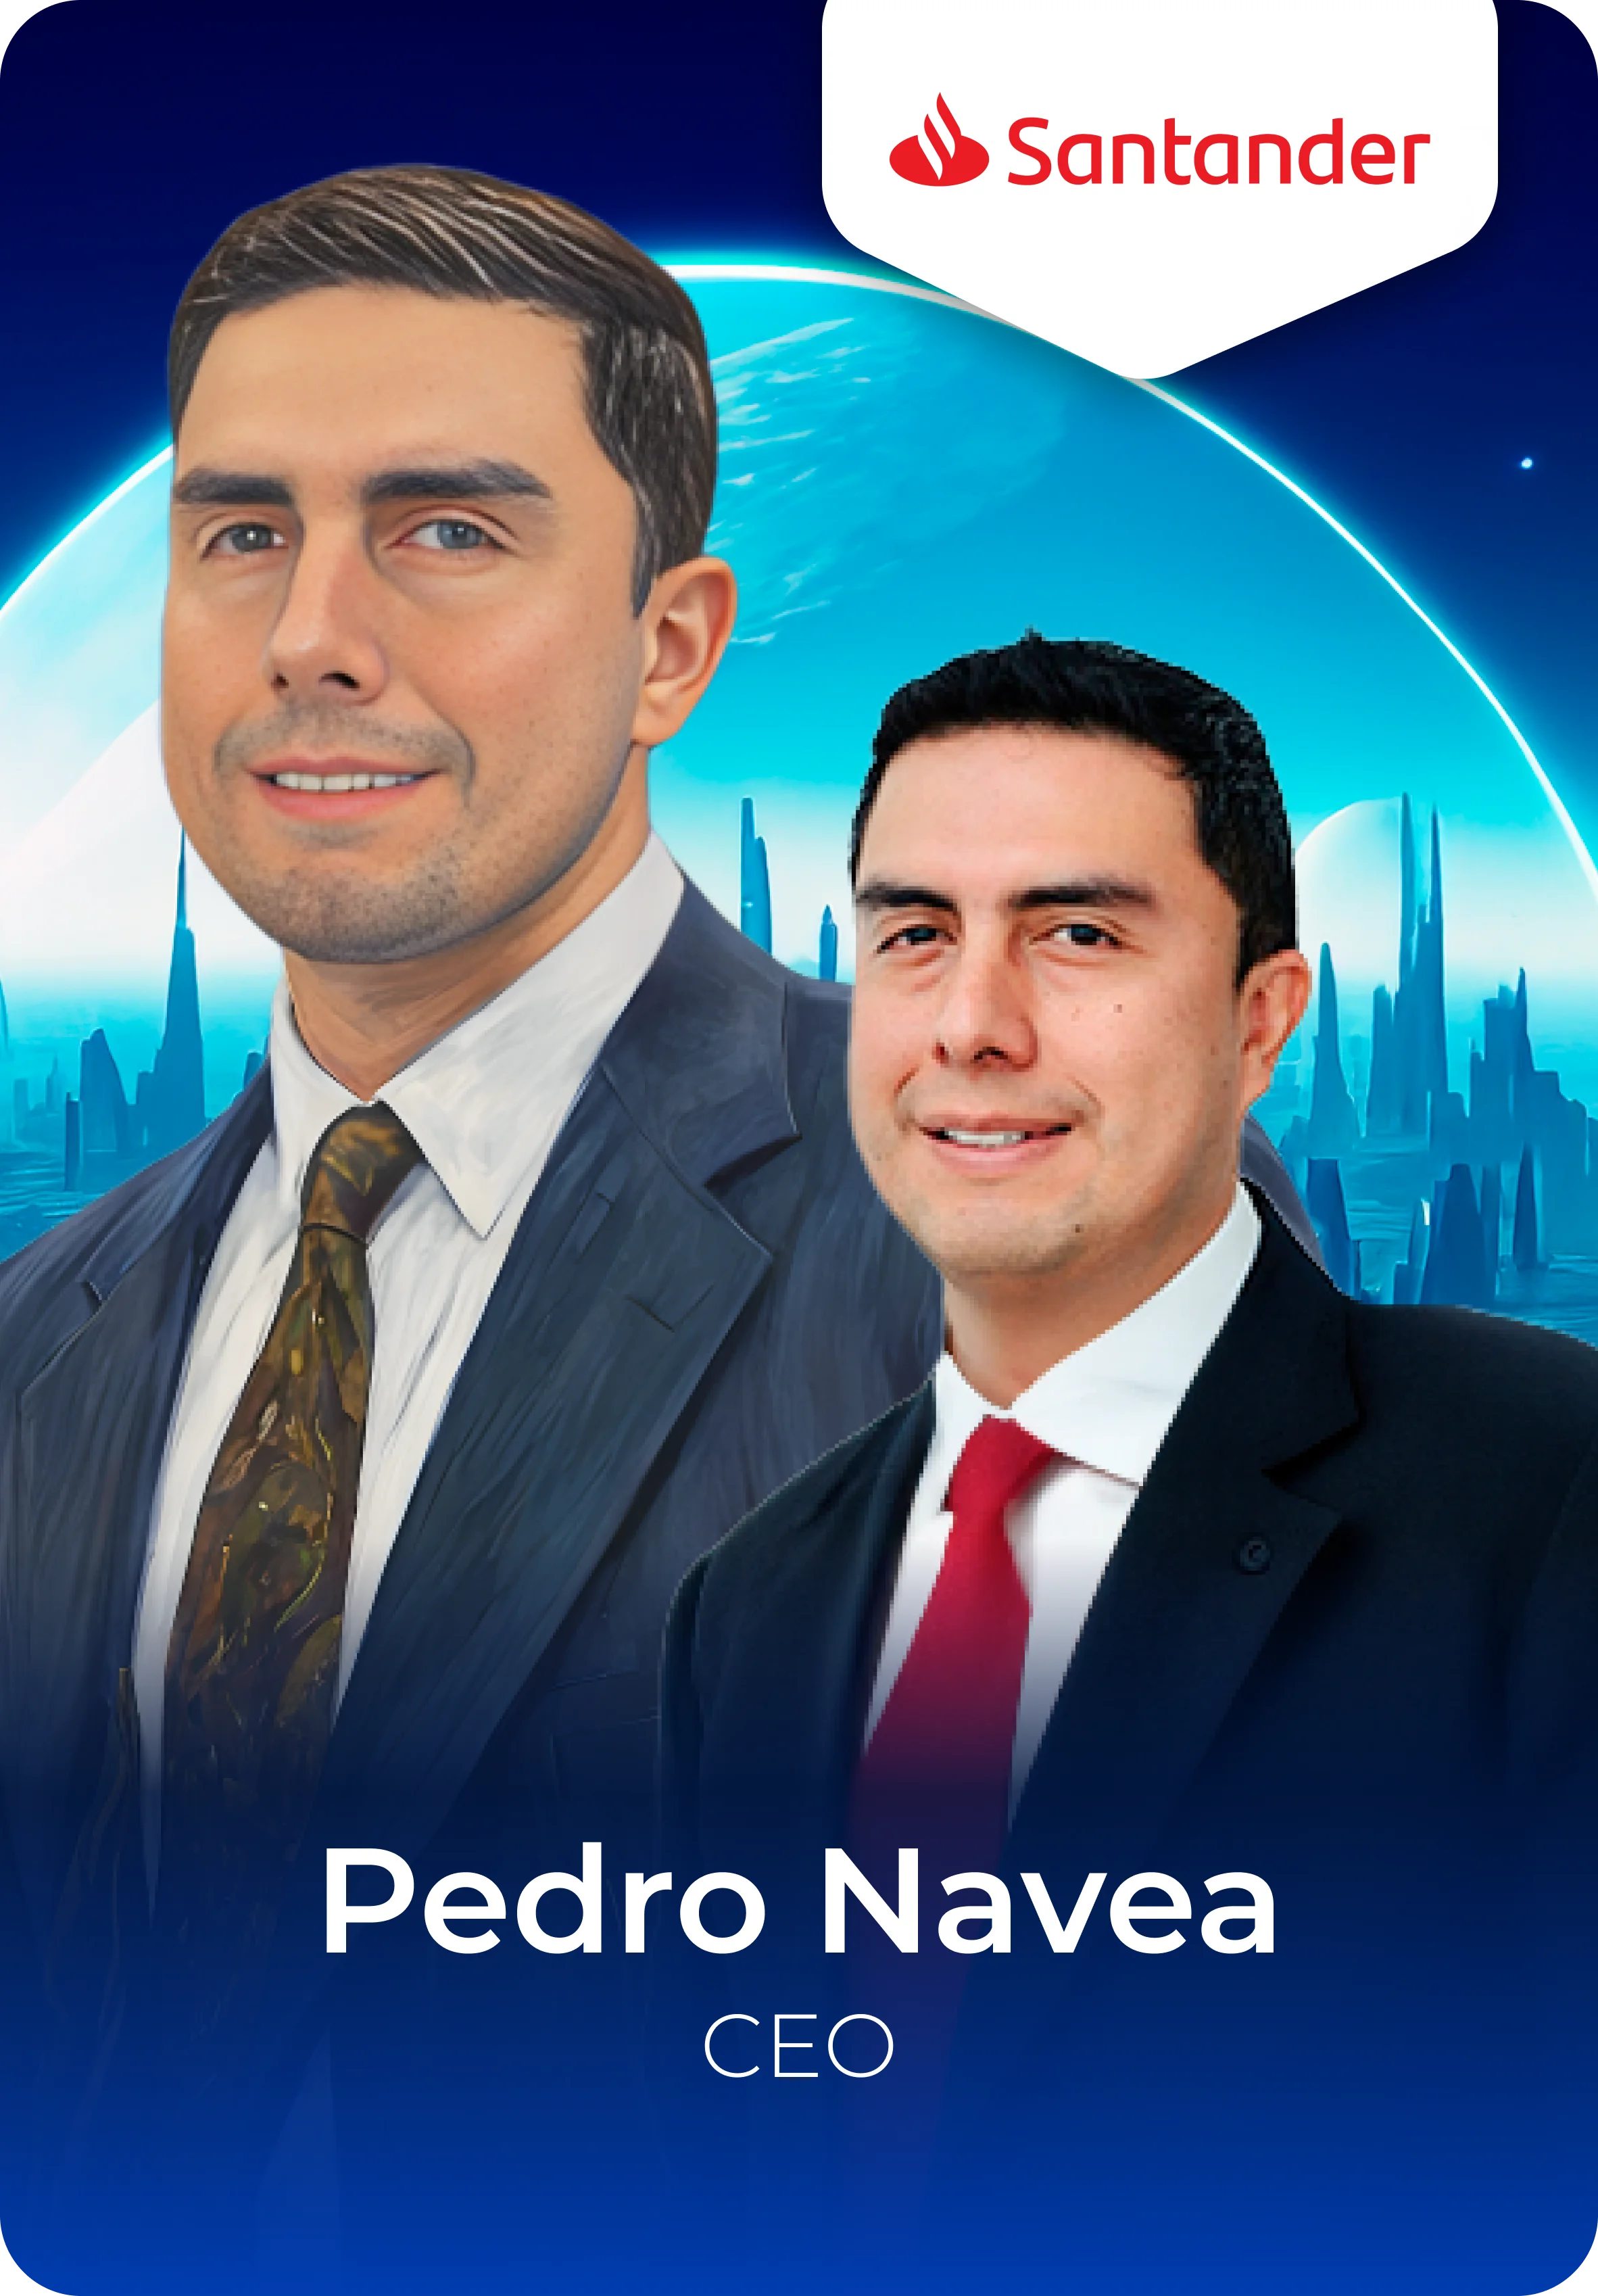 Pedro Navea